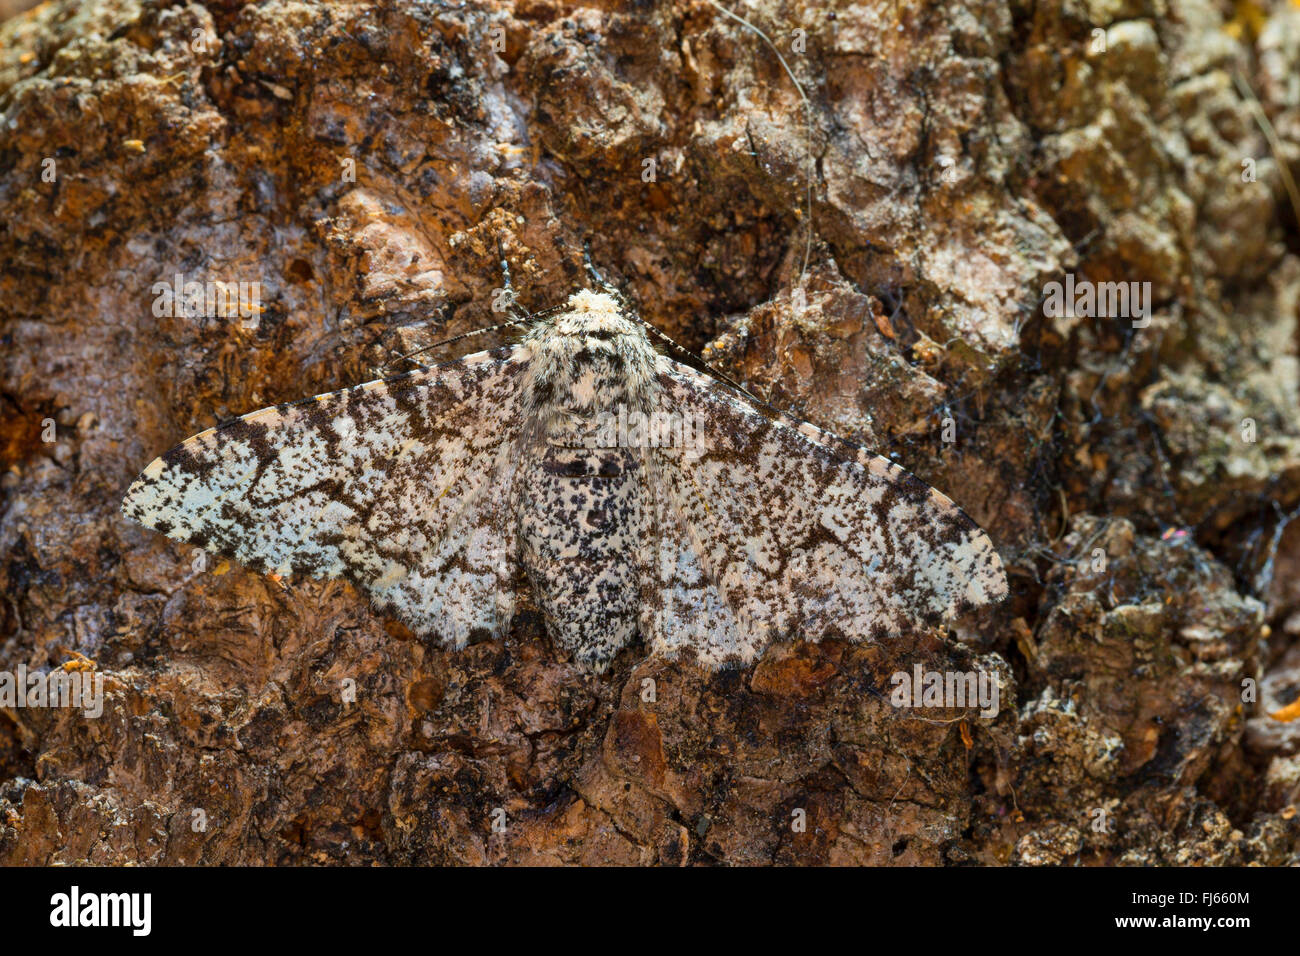 Truffée d'amphibien (Biston betularia Biston, betularius Amphidasis, betularia), à corps blanc parsemé d'amphibien dans un tronc de bouleau, Allemagne Banque D'Images